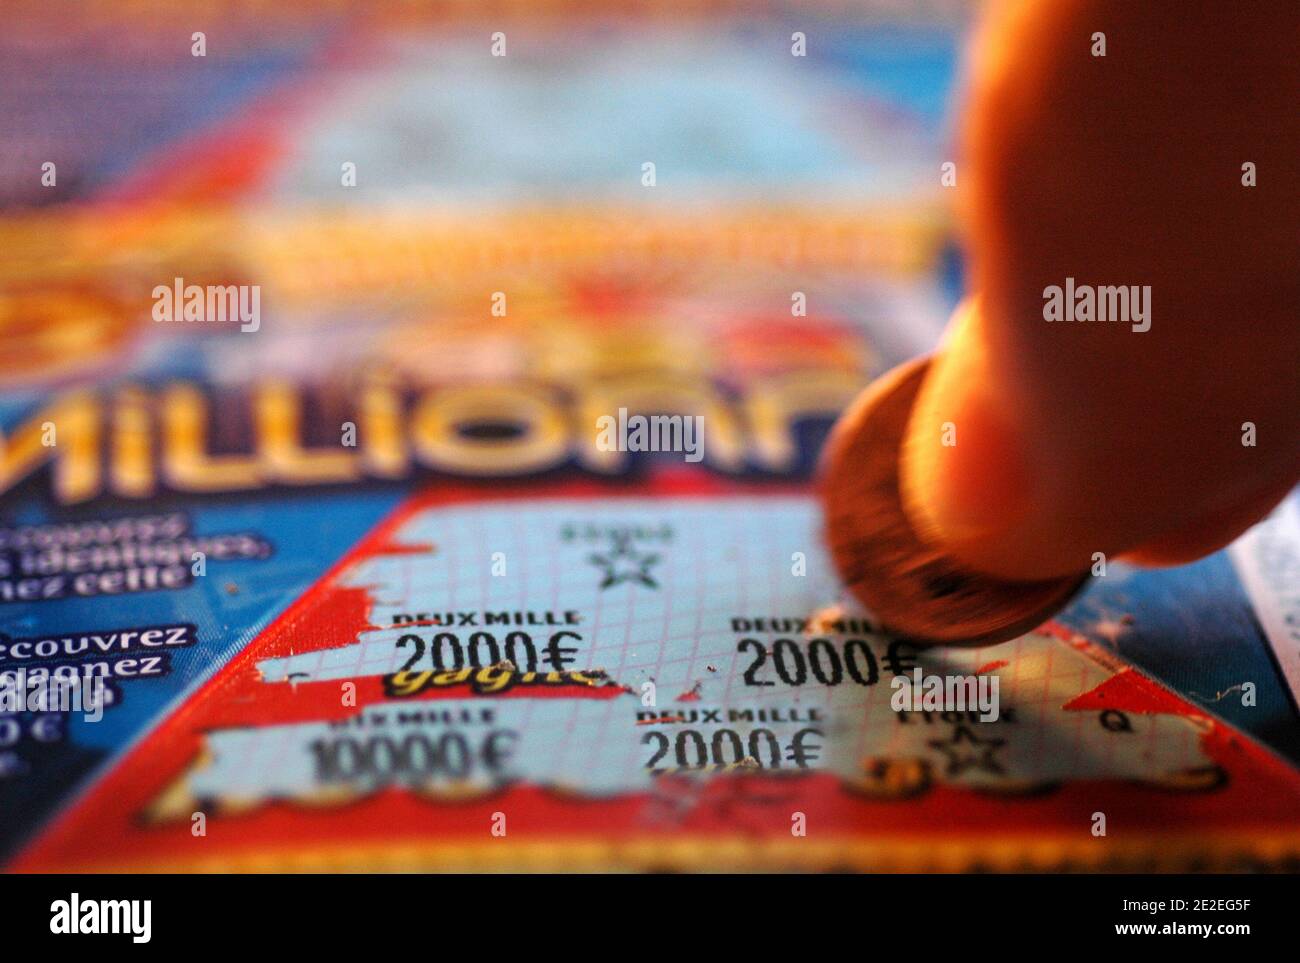 The  Millionnaire , scratch game, gambling in the FDJ (Française des Jeux  ).Scratch, coin, hands, fingers, close-up, 2011. Le millionnaire, jeu de  grattage, jeu d'argent de la FDJ( Française des Jeux ).